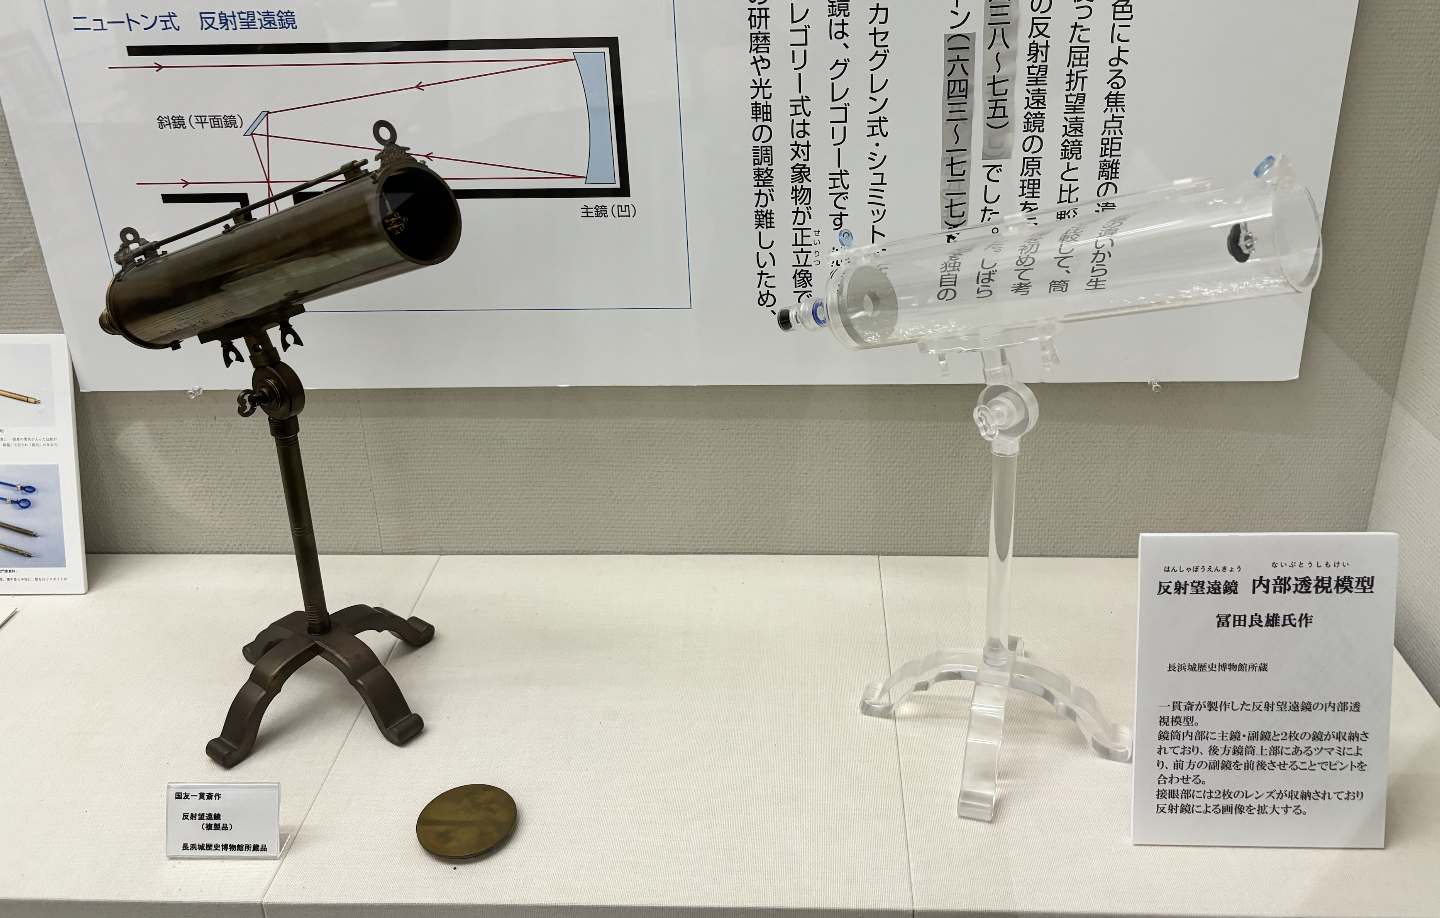 江戸時代の反射望遠鏡